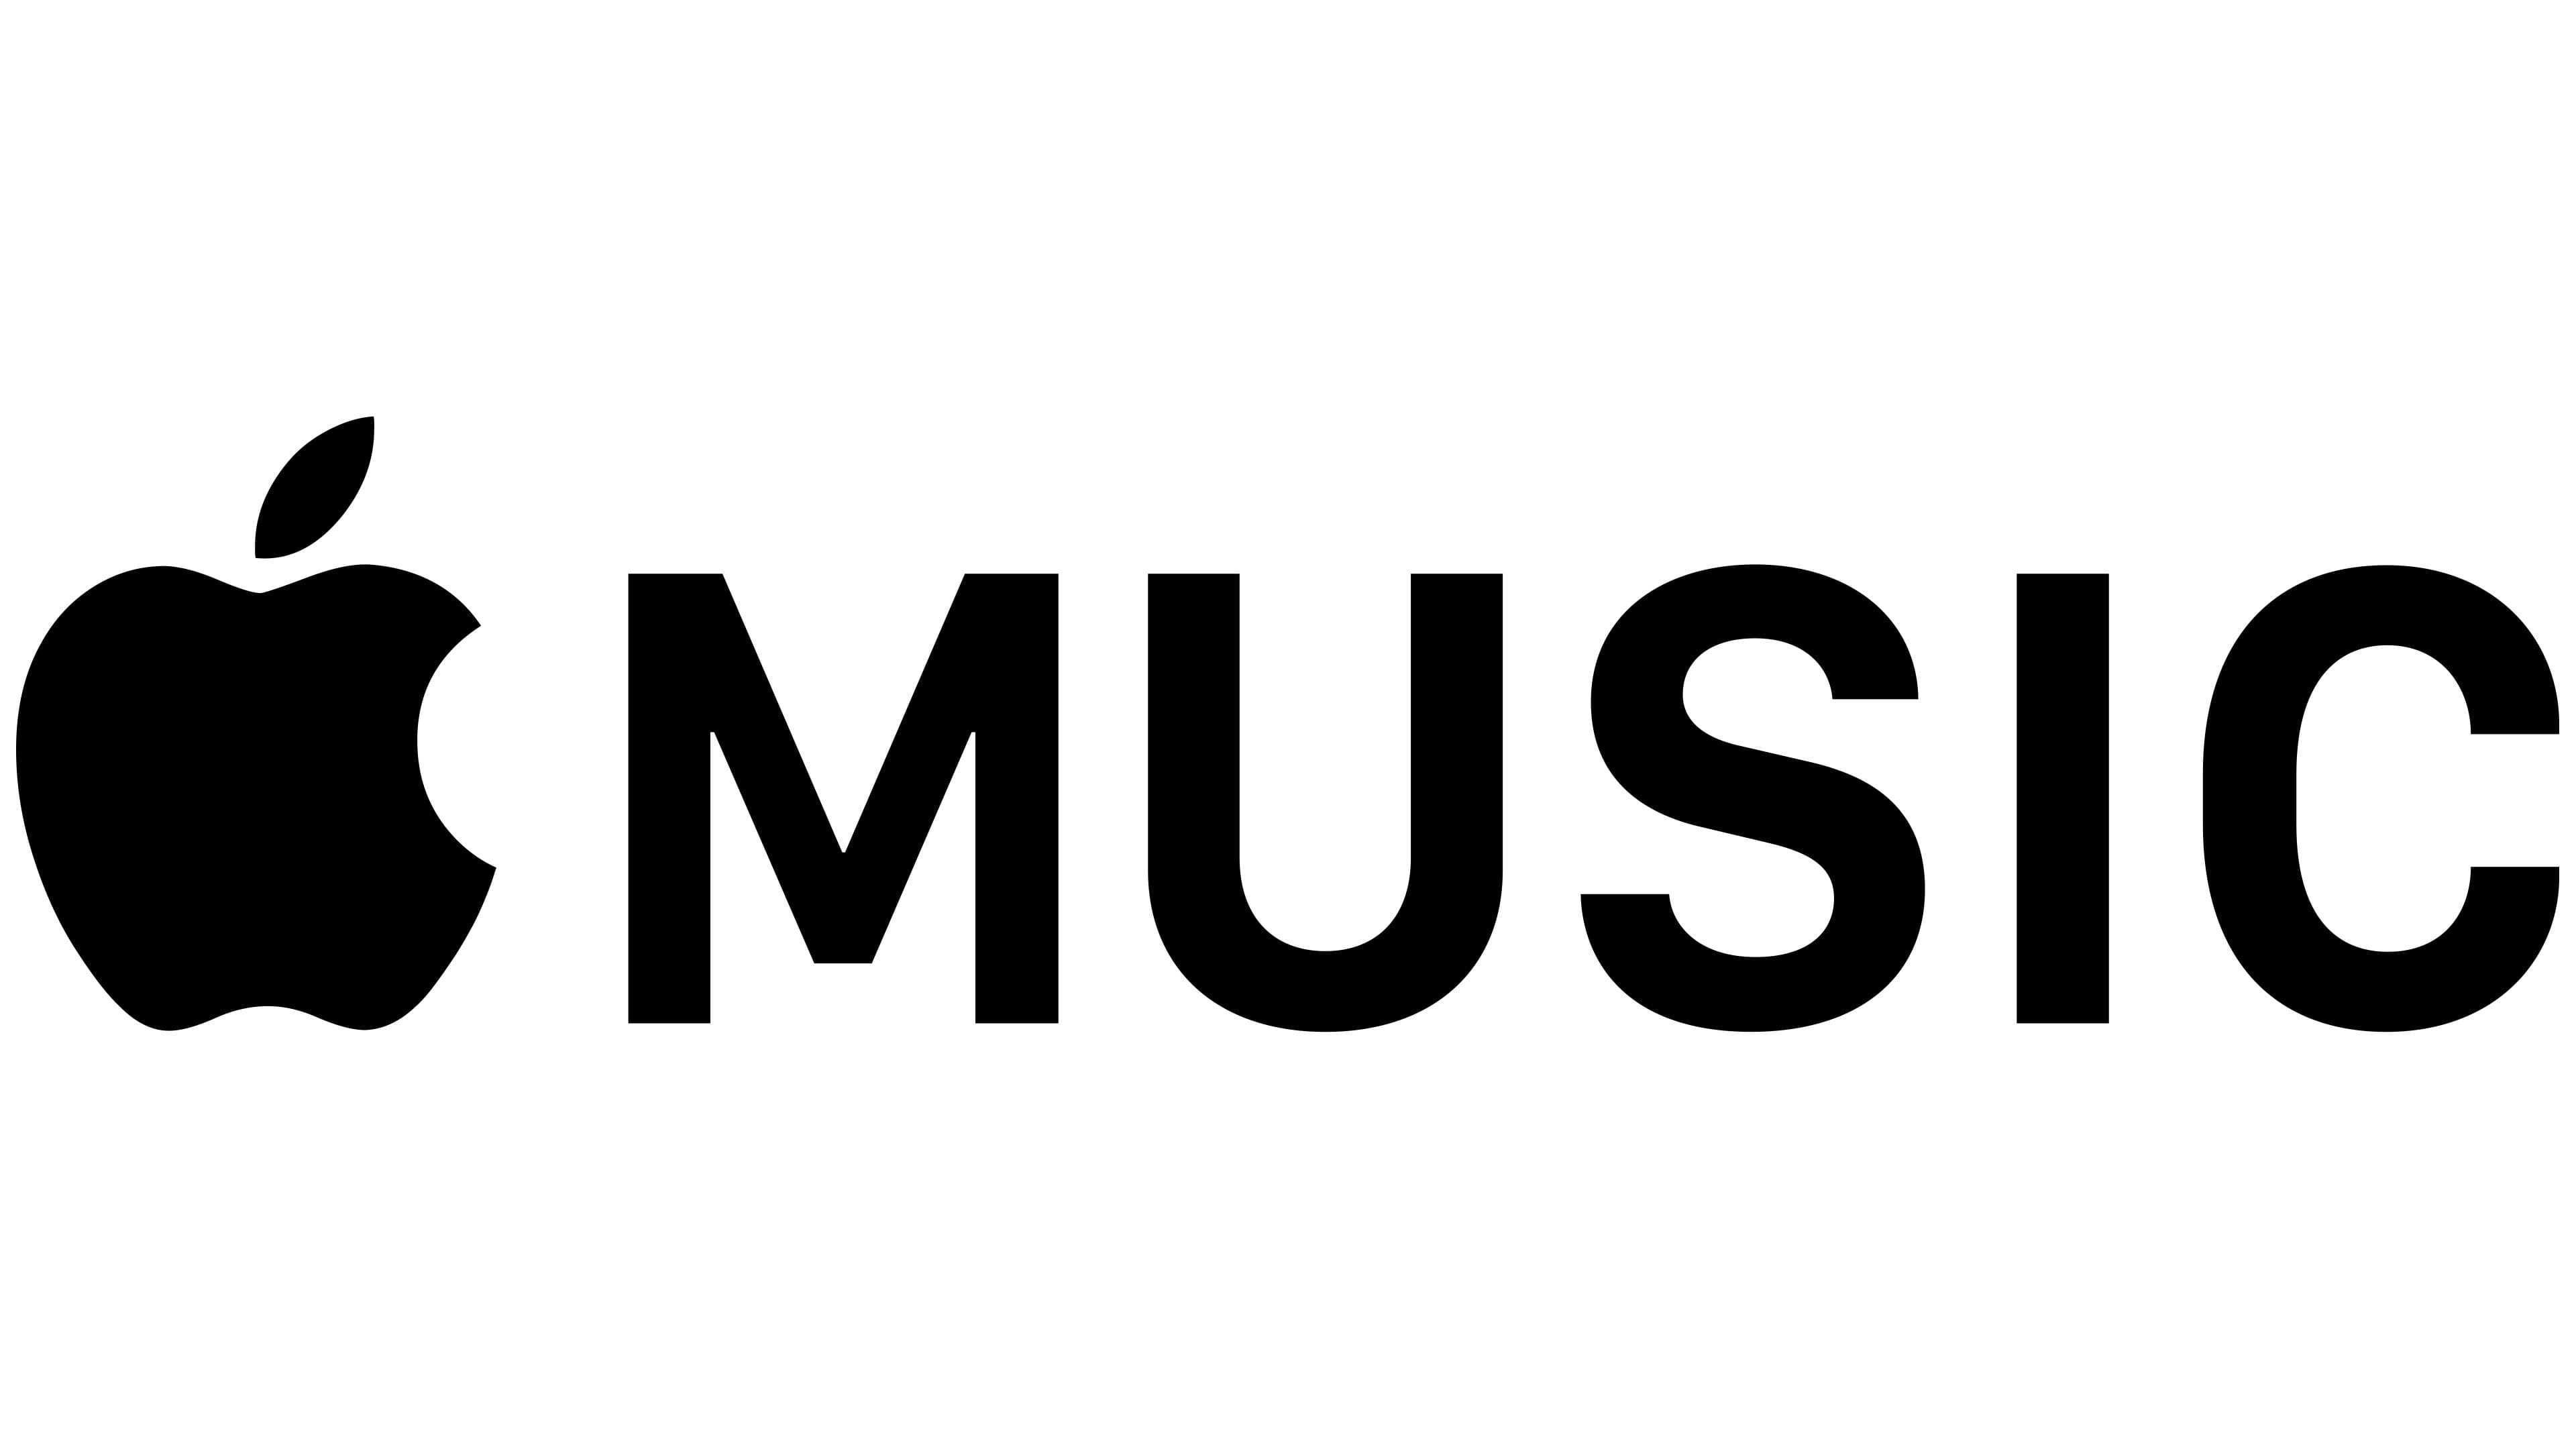 Apple Music Logo y símbolo, significado, historia, PNG, marca